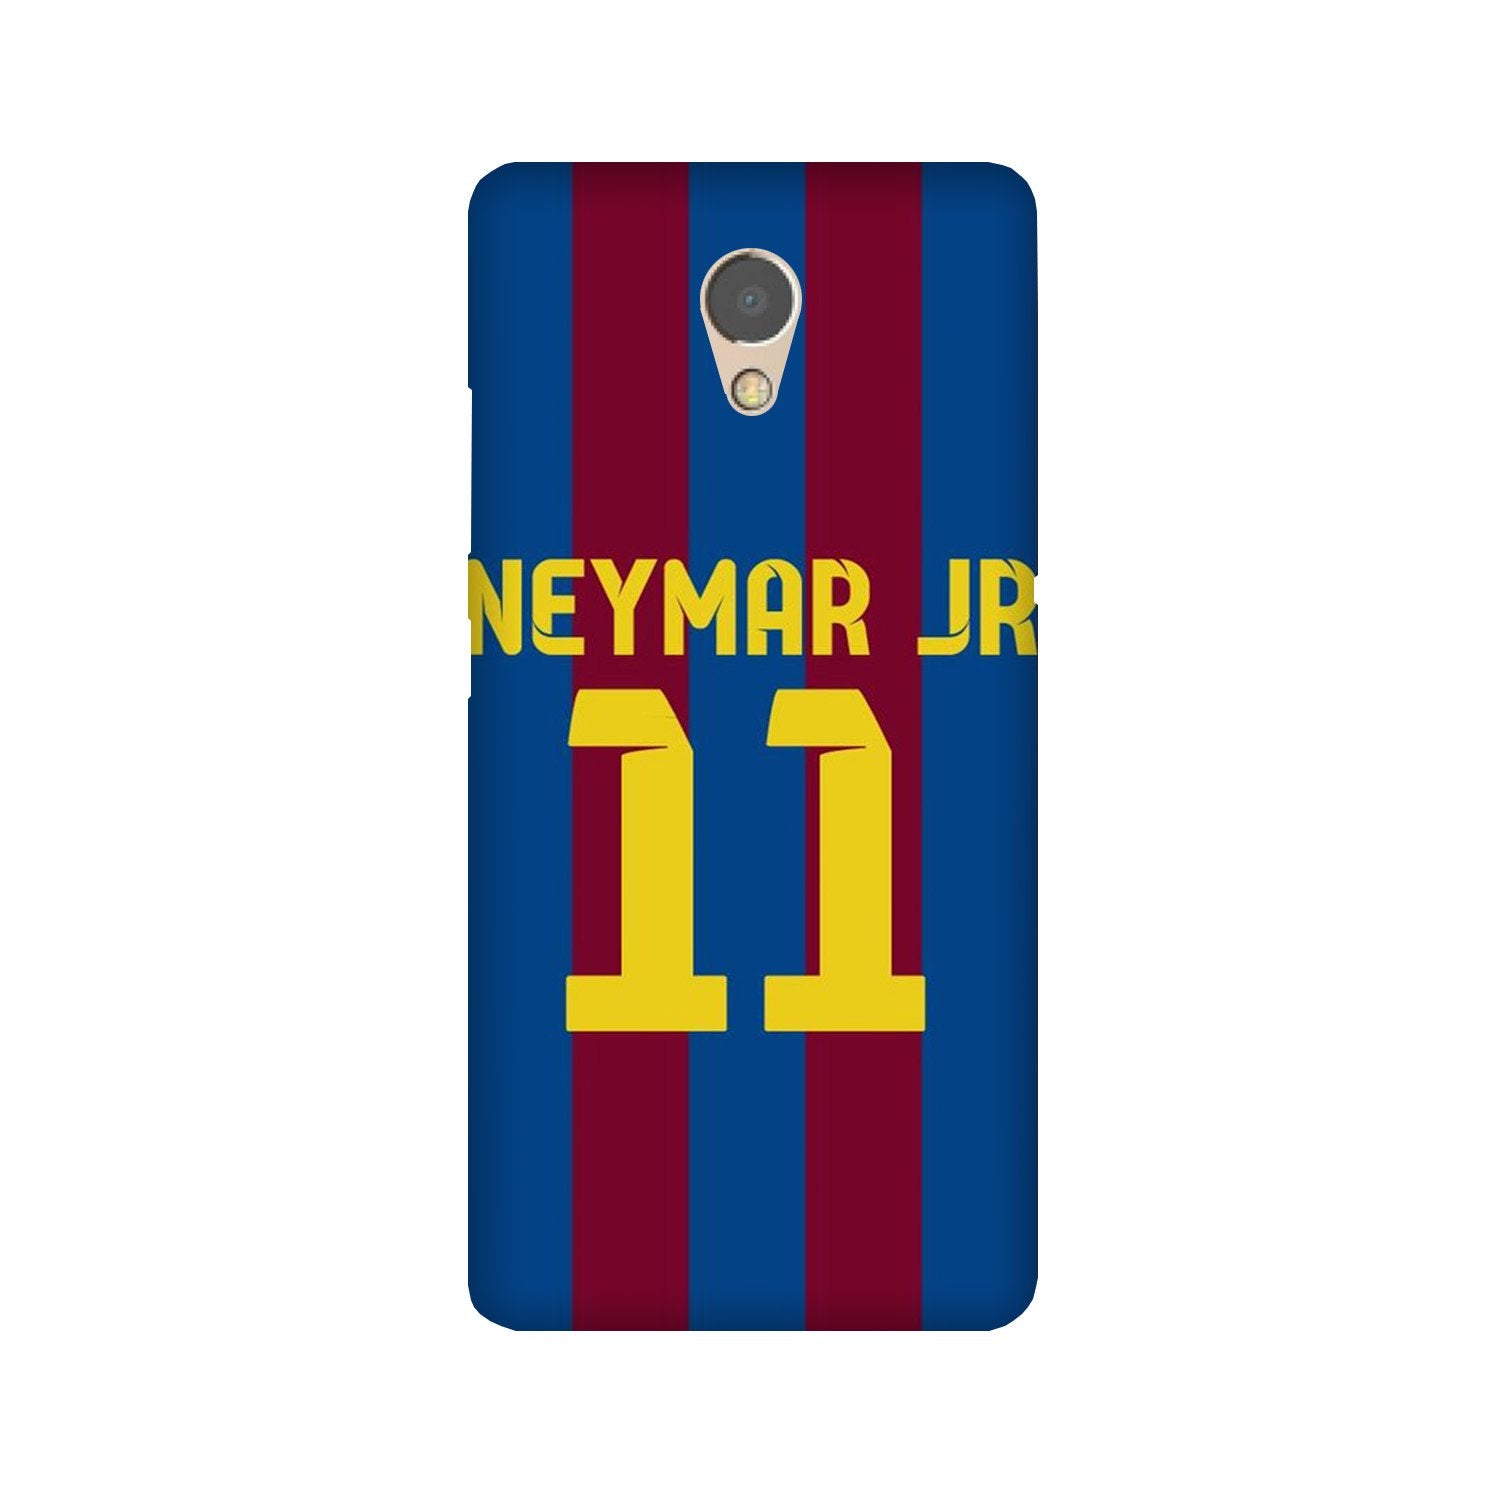 Neymar Jr Case for Lenovo P2(Design - 162)